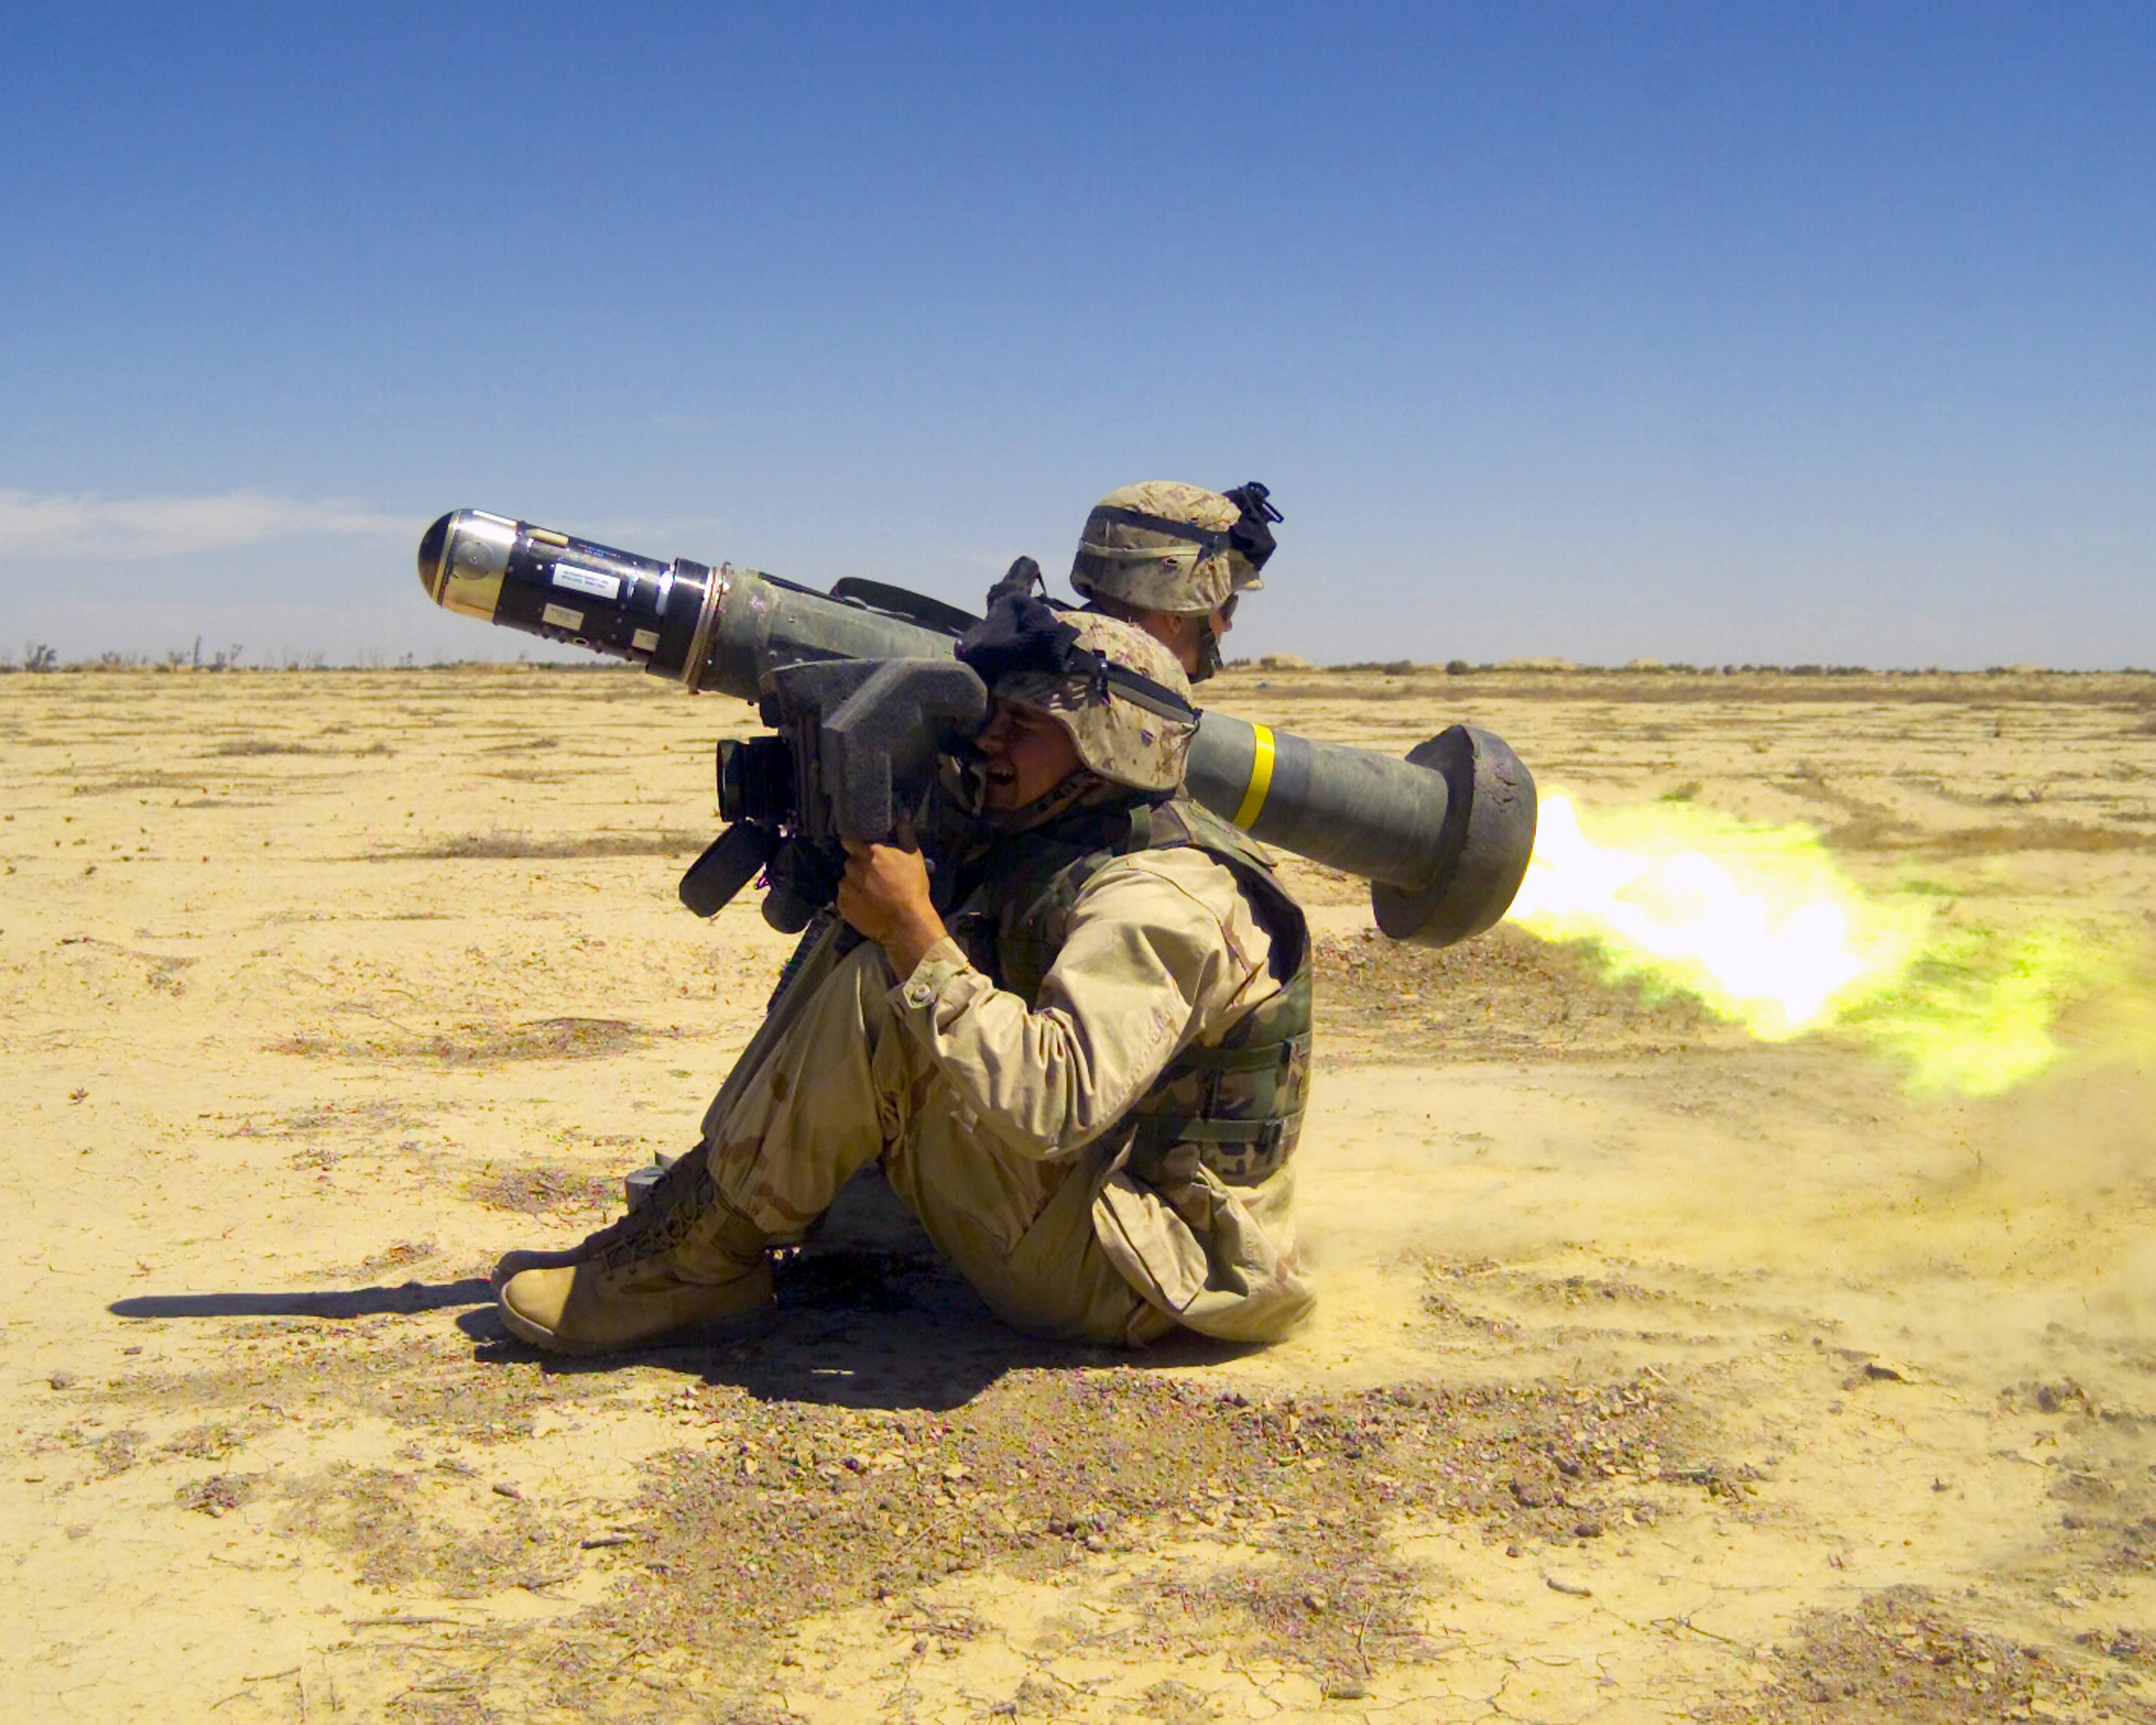 FGM-148 Javelin anti-tank missile (U.S.)